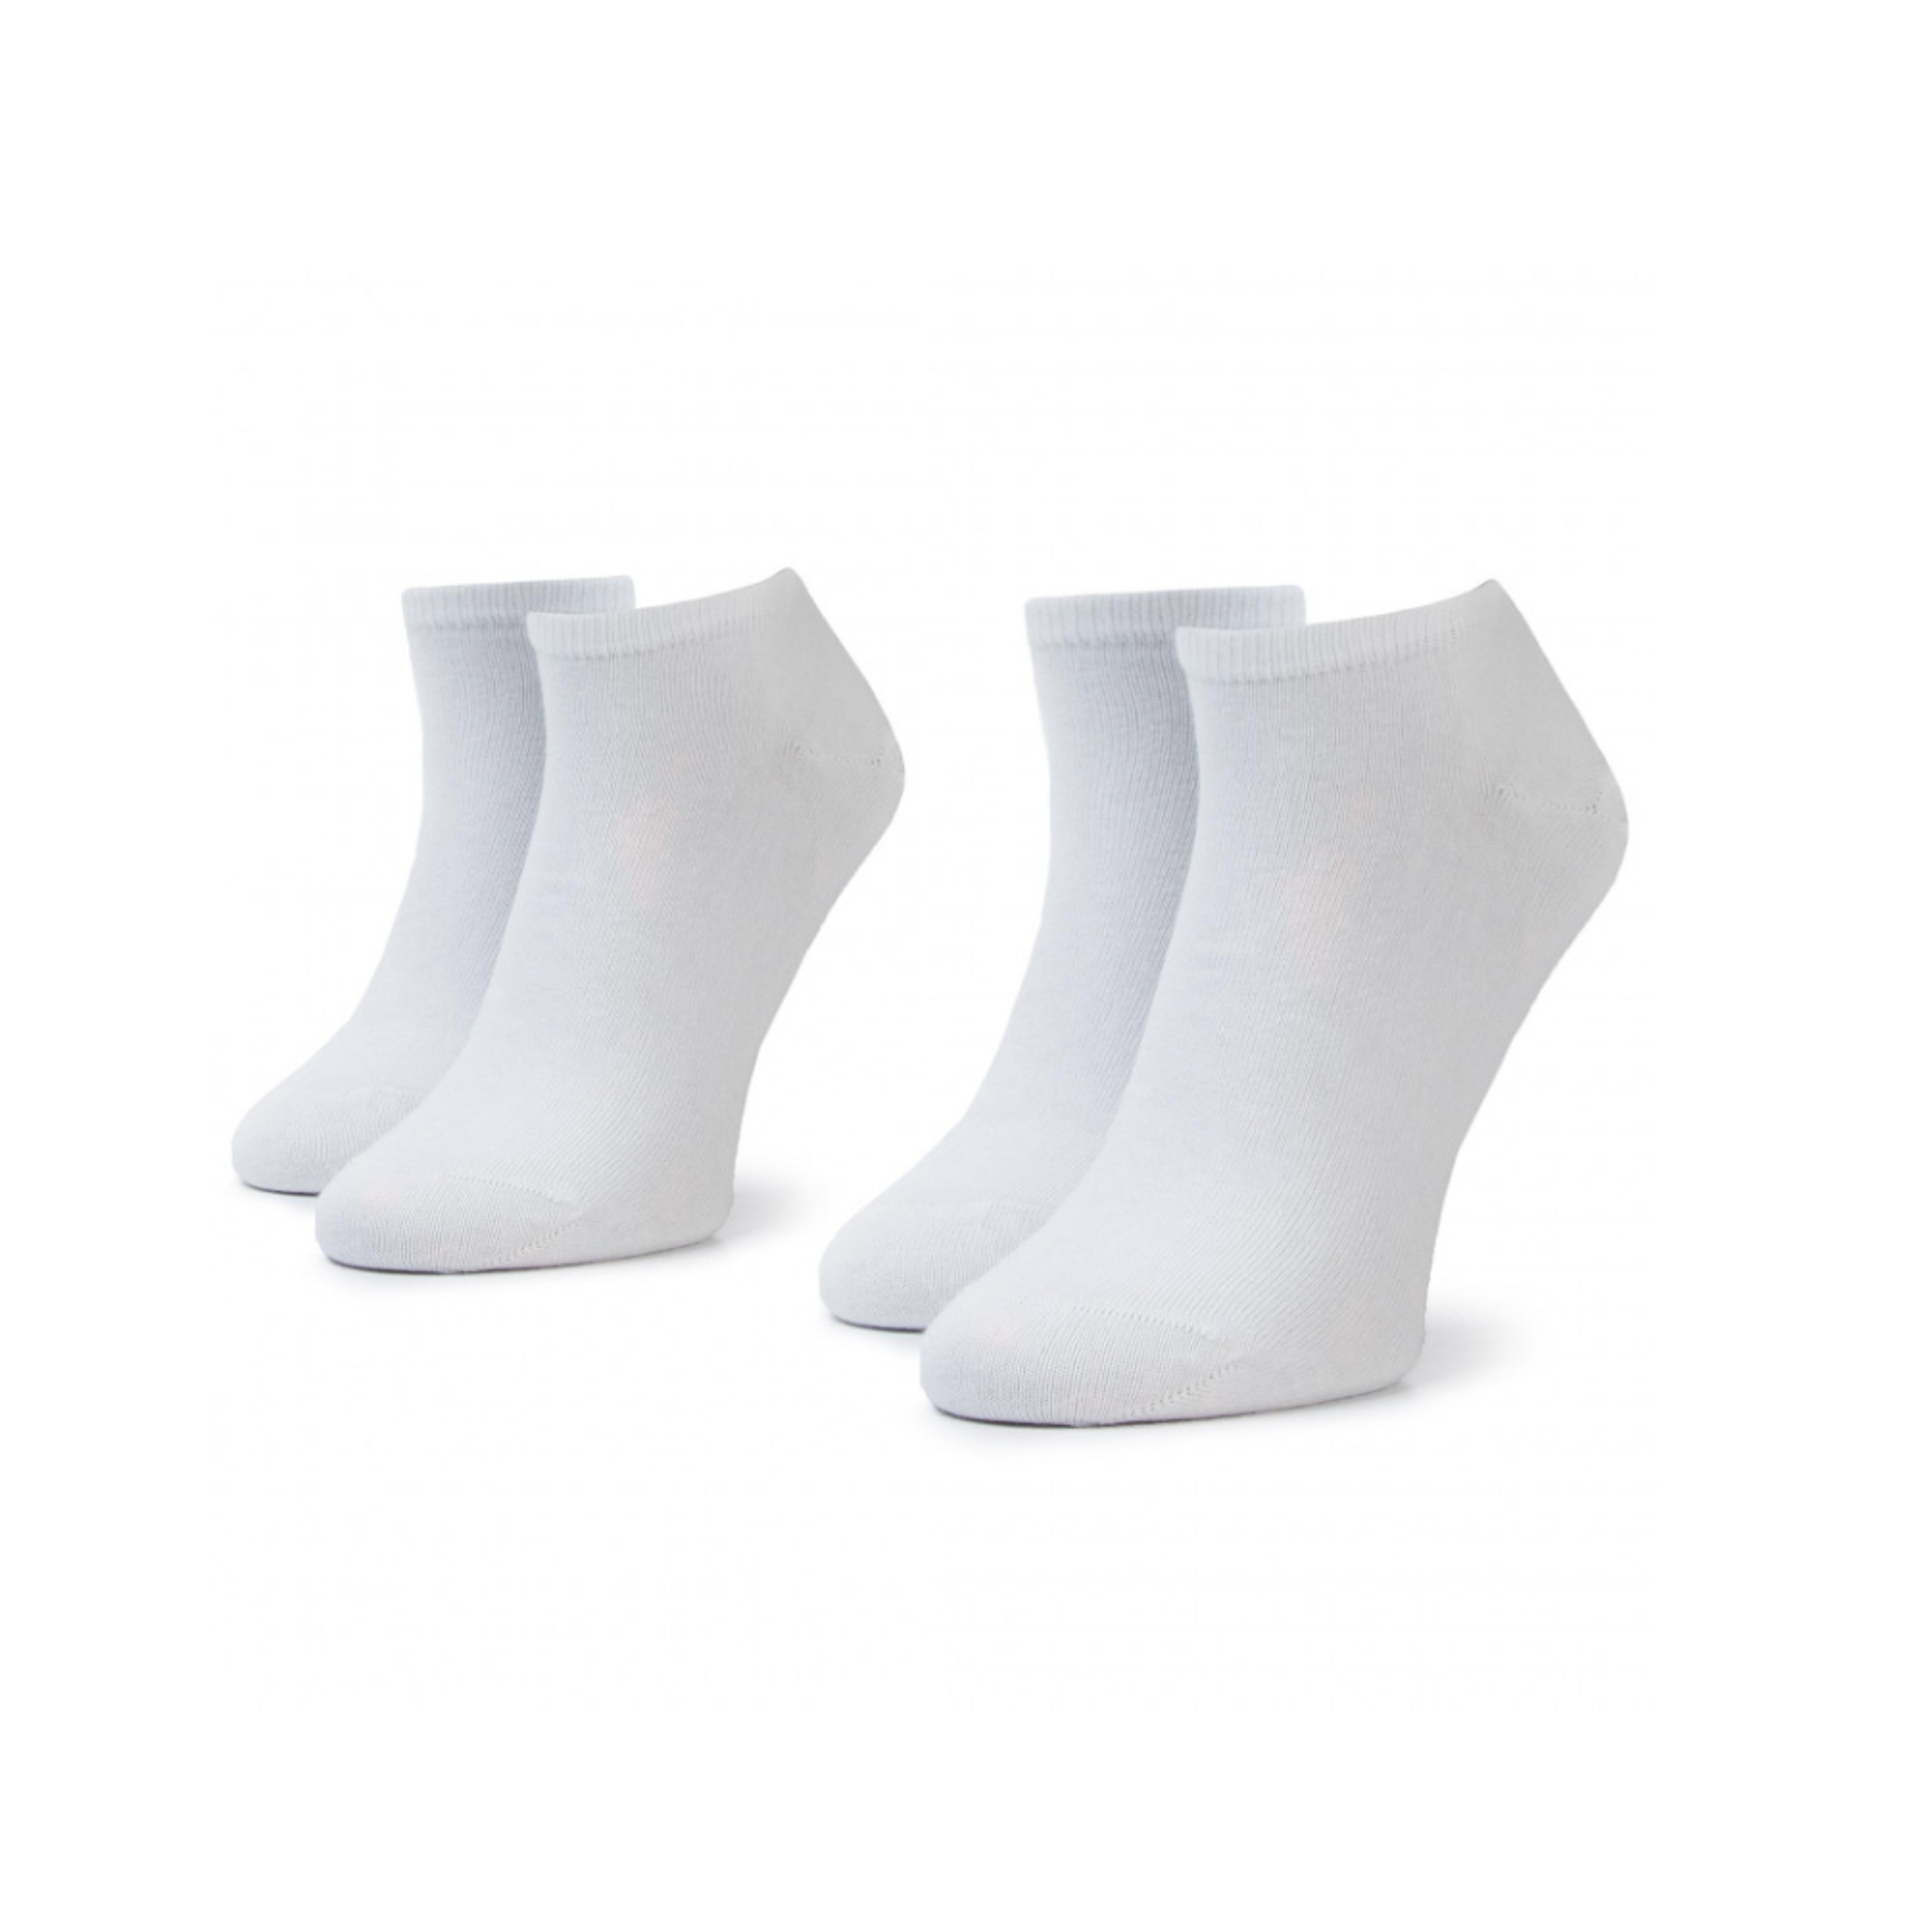 Tommy Hilfiger pánske biele ponožky 2pack - 47 (300)